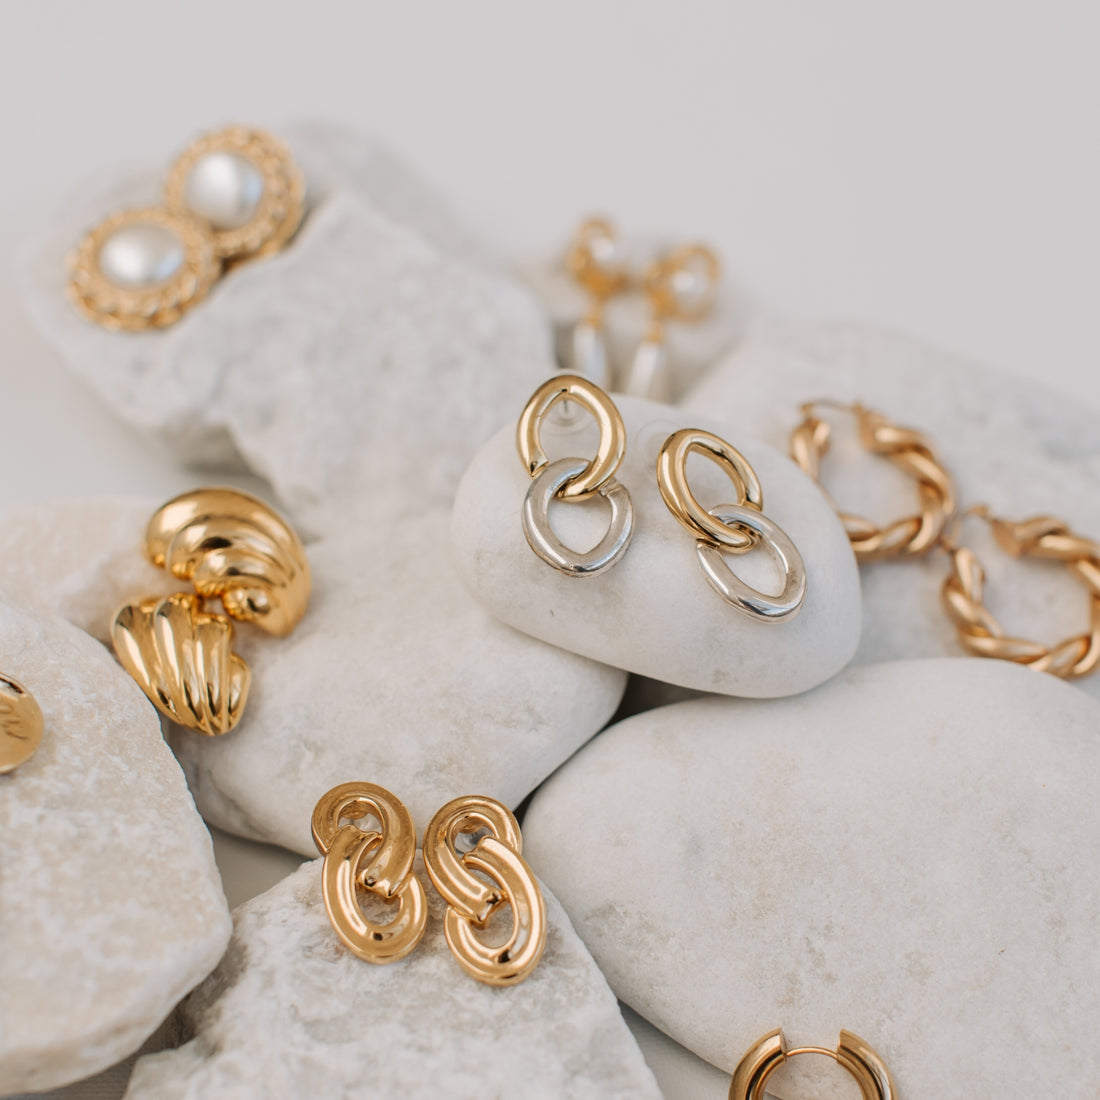 Gold earrings on rock